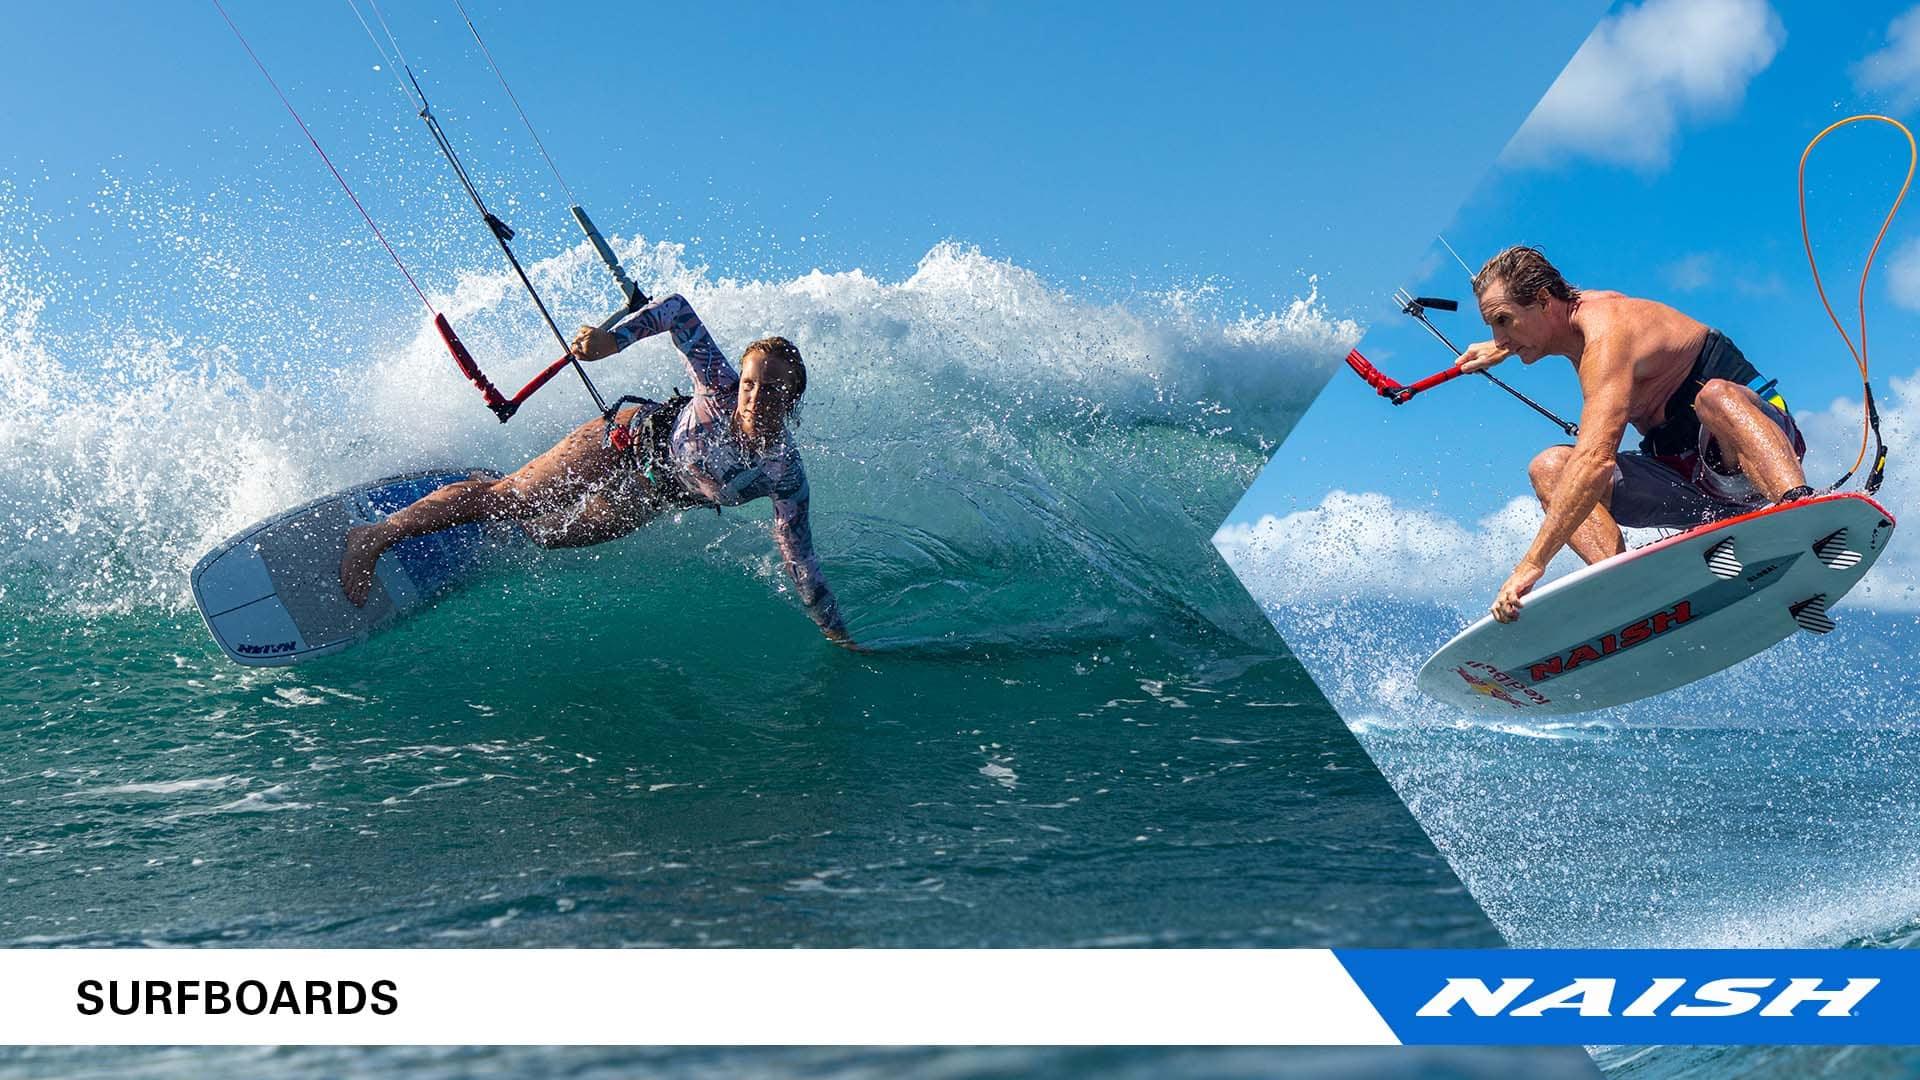 New Naish Surfboards - Naish.com